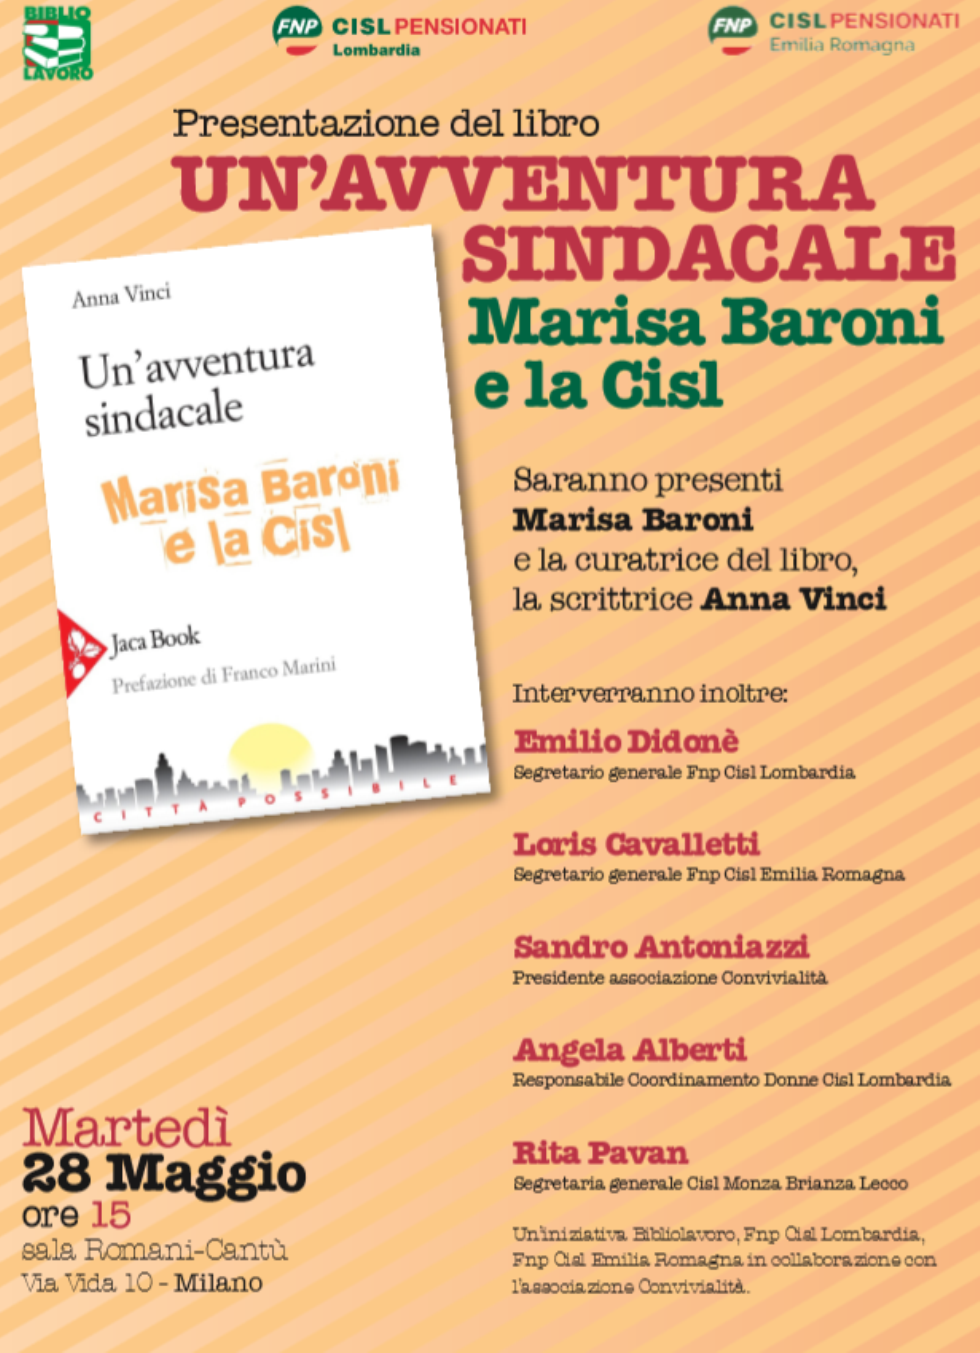 Milano 28 Maggio: presentazione del libro 